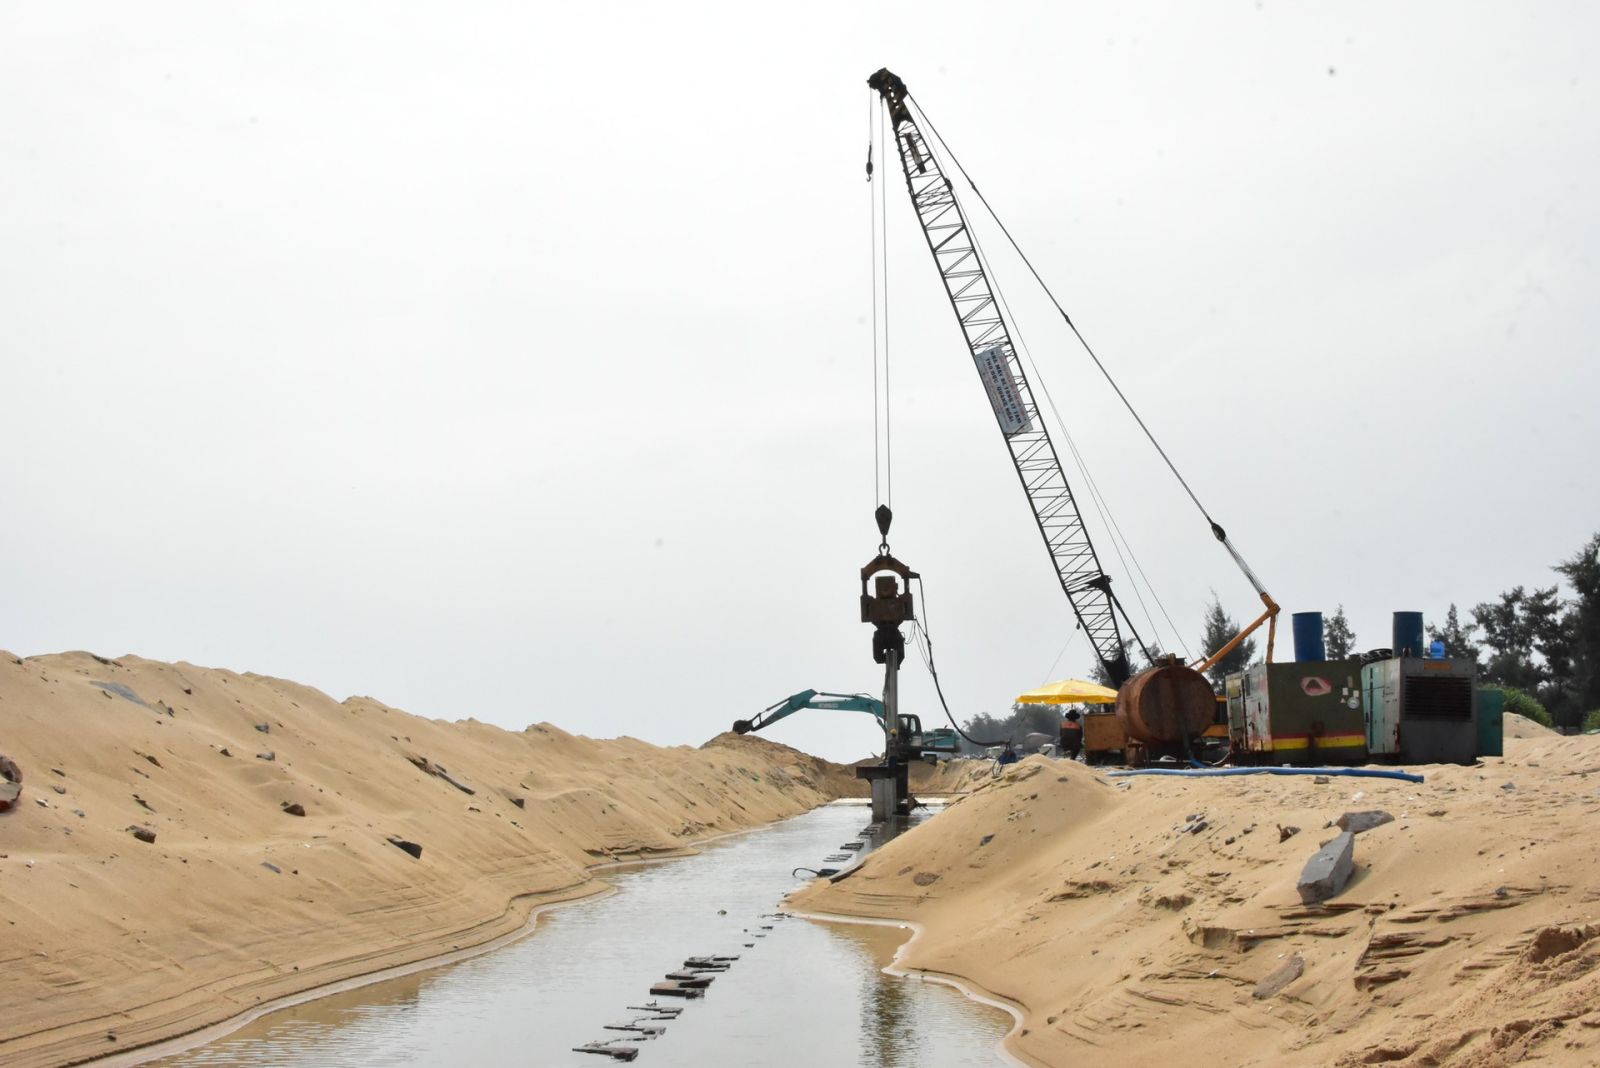 Nguồn vật liệu nào sẽ giải quyết tình trạng "đội giá" cát xây dựng hiện nay? | Bất động sản